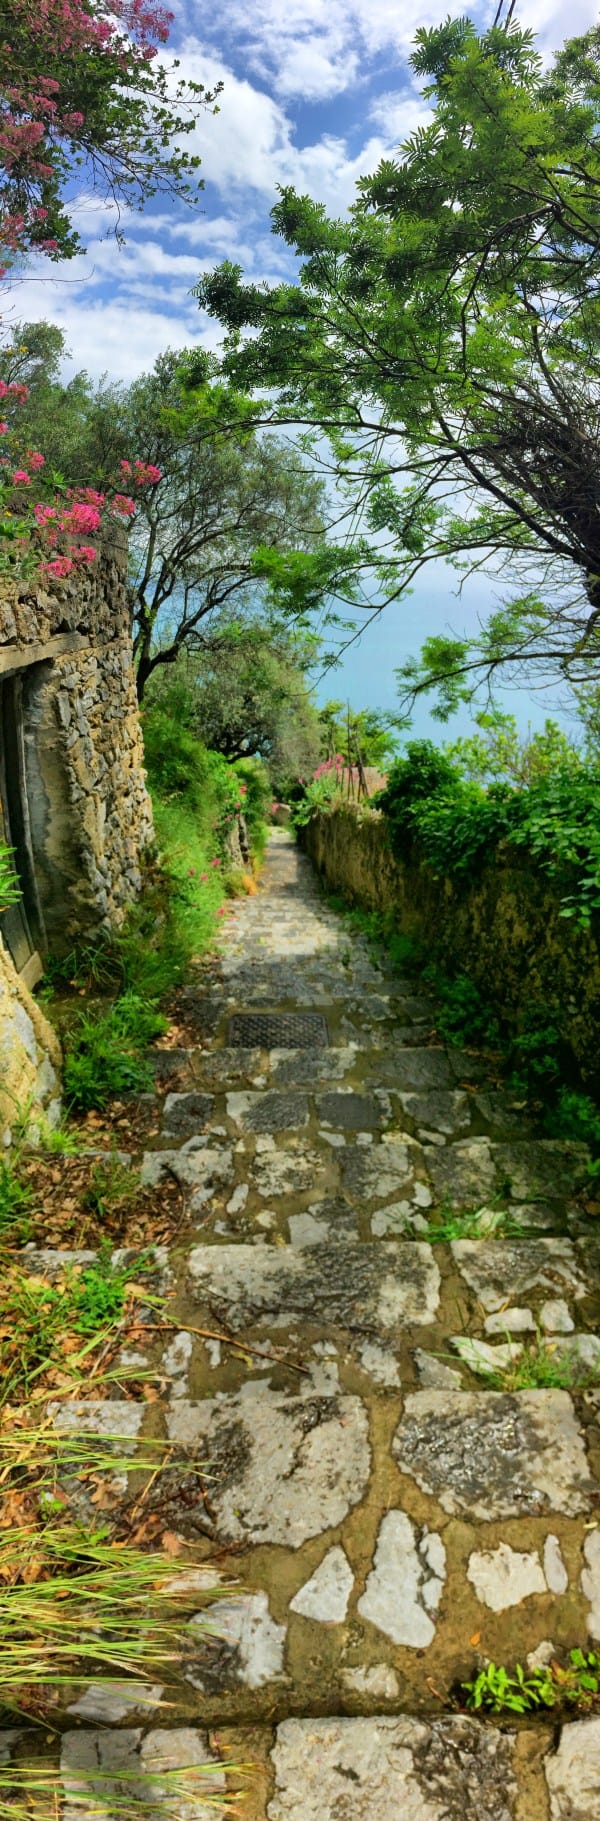 Randonnée sur la côte amalfitaine Tronçon 3 escalier typique avec des milliers de marches